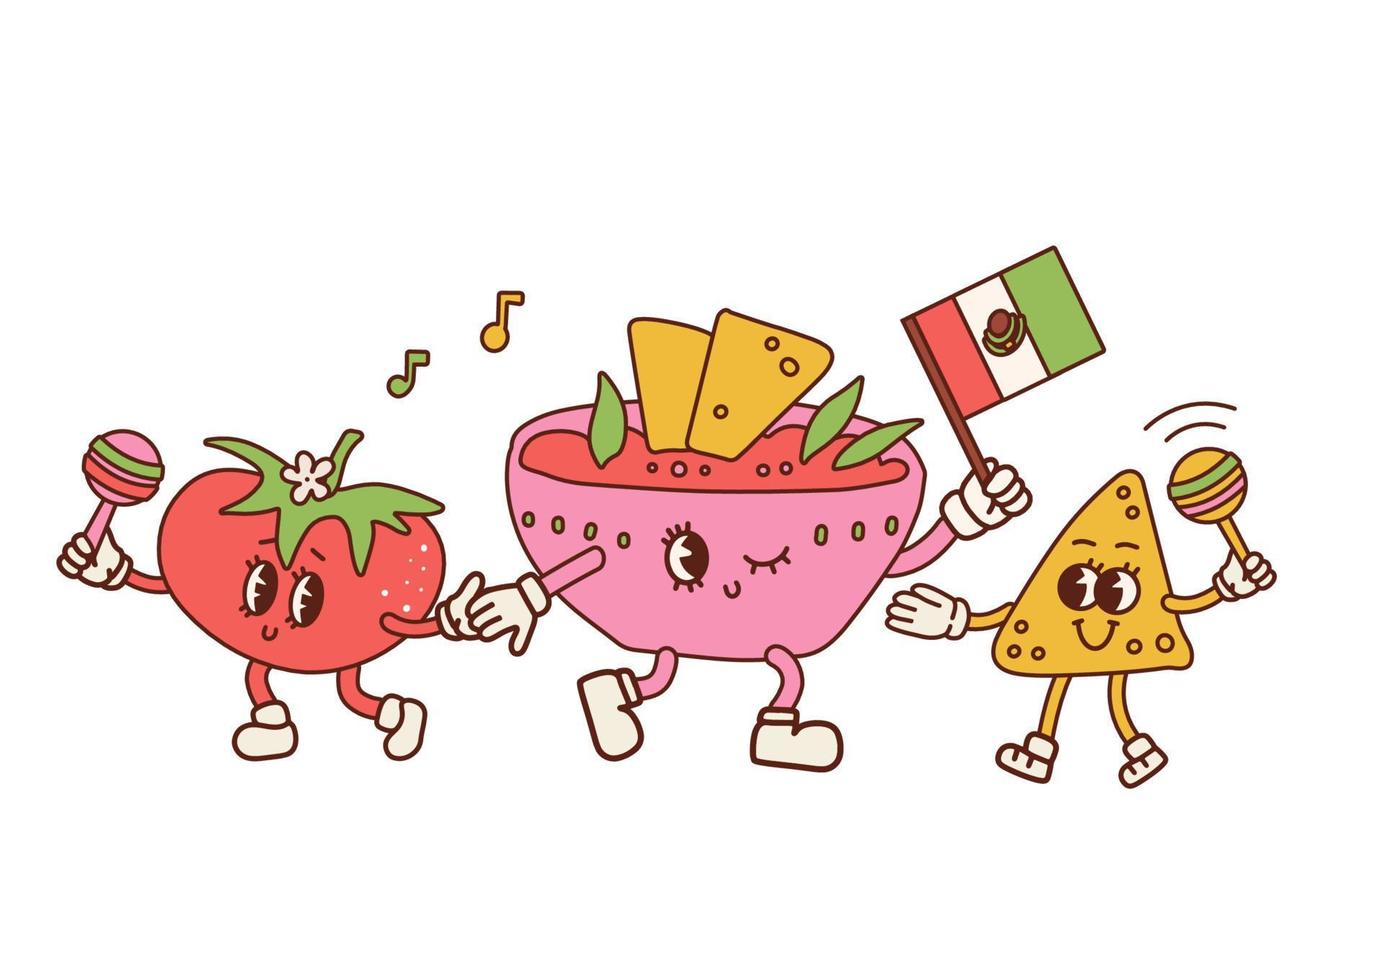 drôles de nachos avec des personnages de sauce tomate et salsa. fête de la cuisine mexicaine de dessin animé rétro. chips nacho avec maracas dans les mains, bol de sauce avec drapeau mexicain. contour vectoriel illustration dessinée à la main.